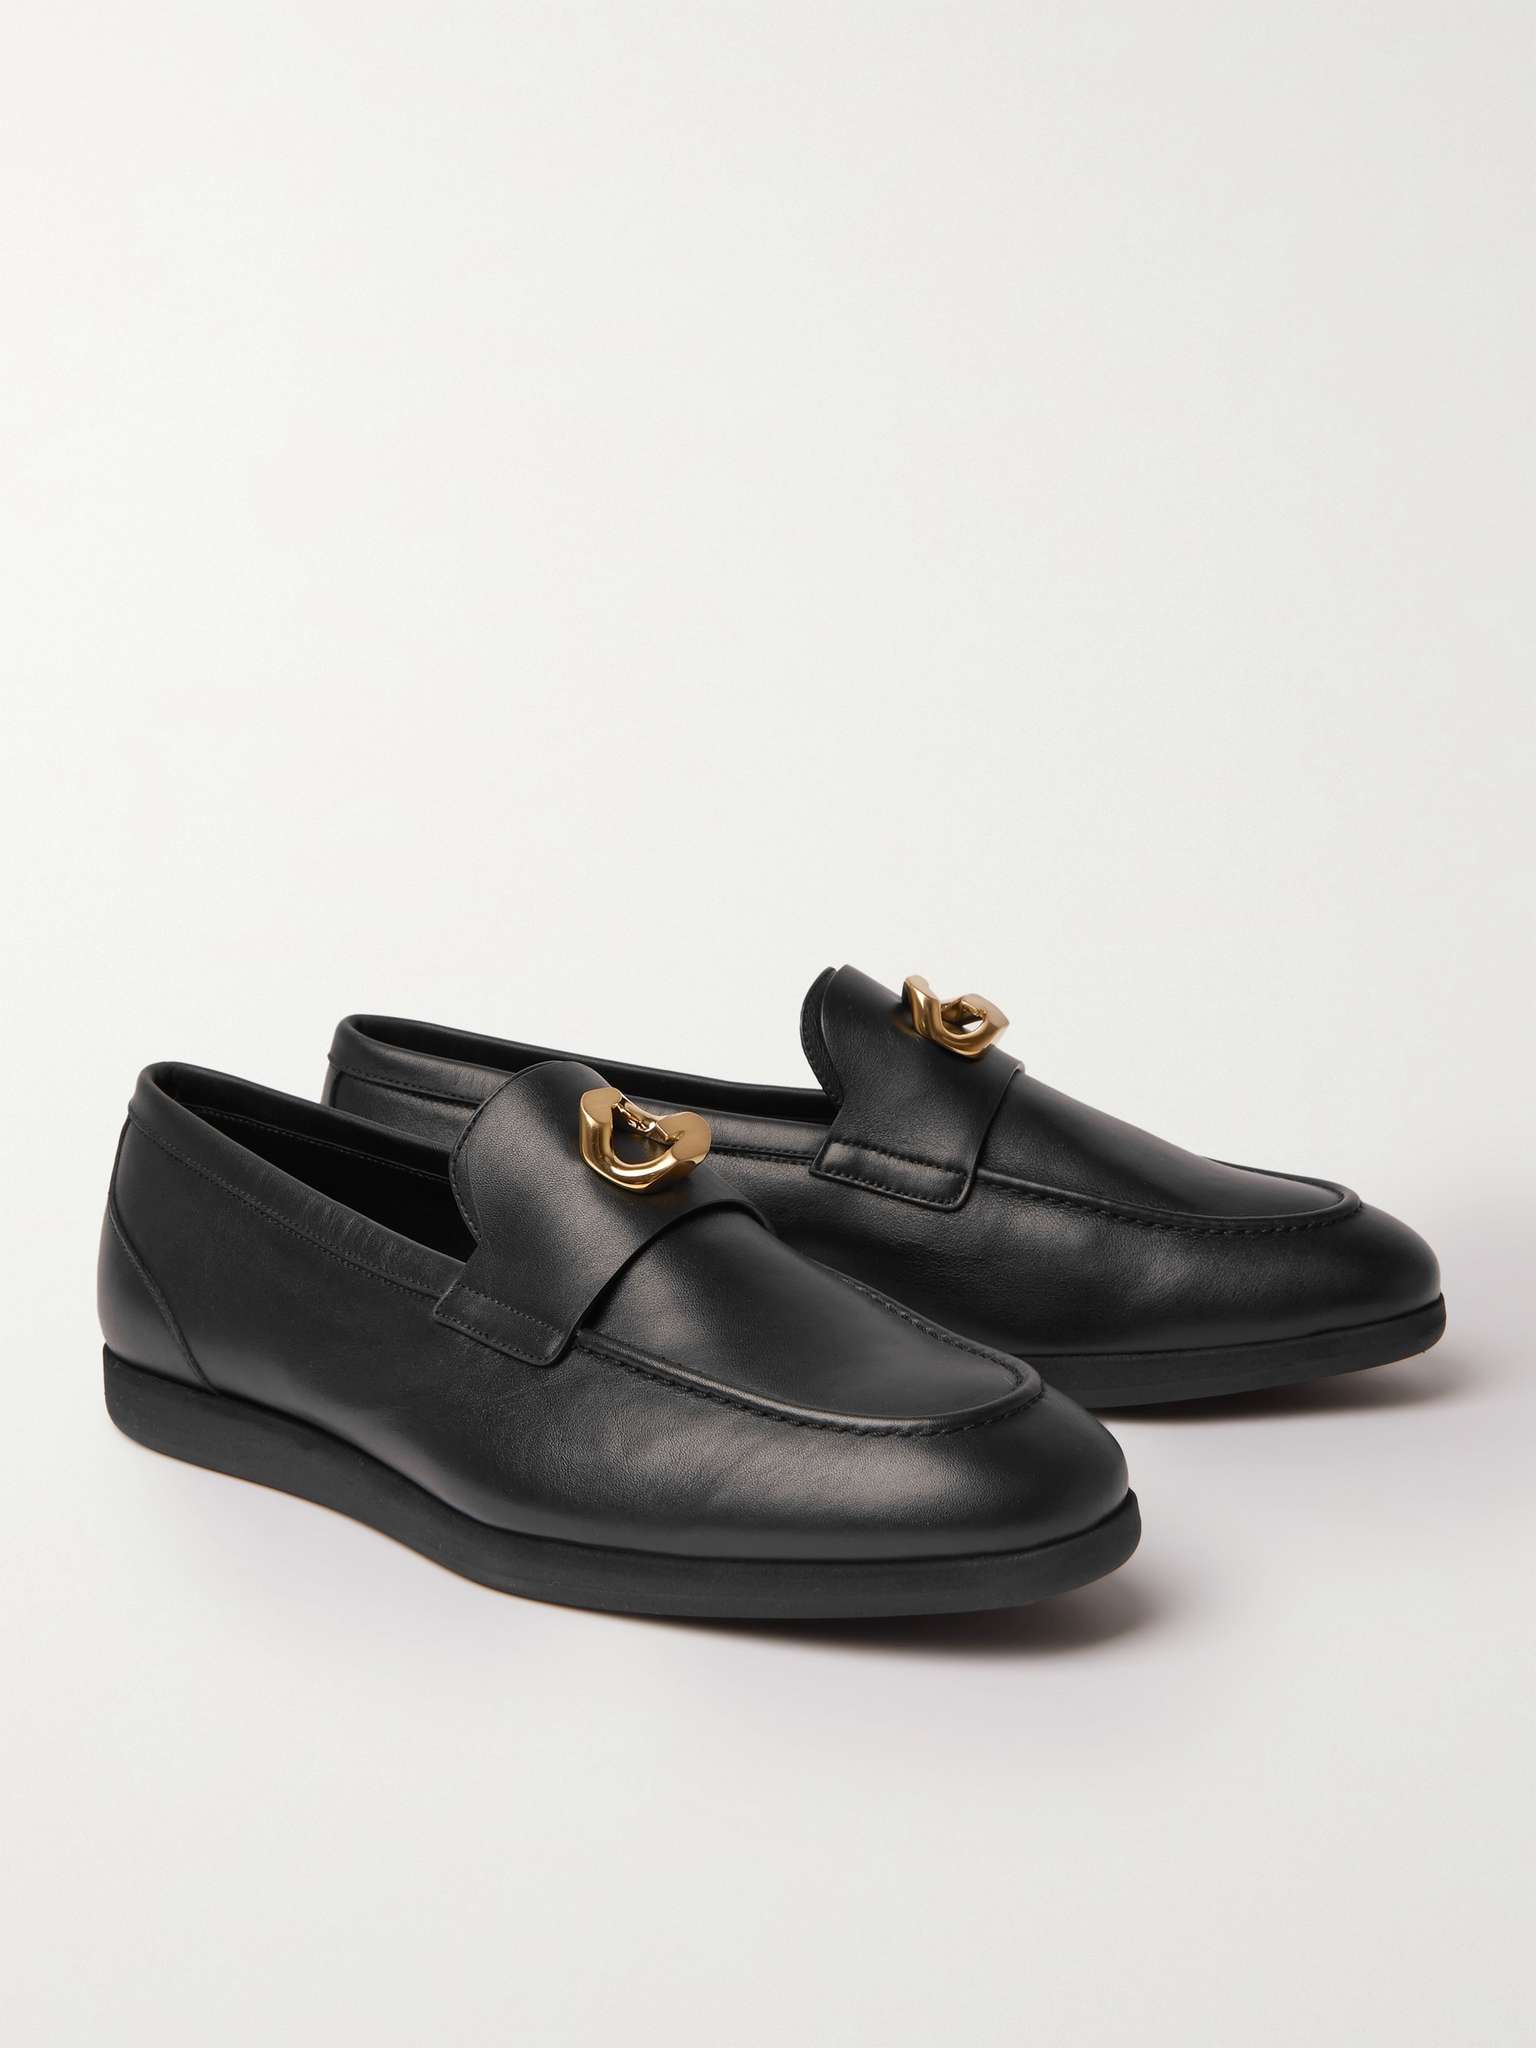 GIVENCHY Logo-Embellished Leather Loafers for Men | MR PORTER